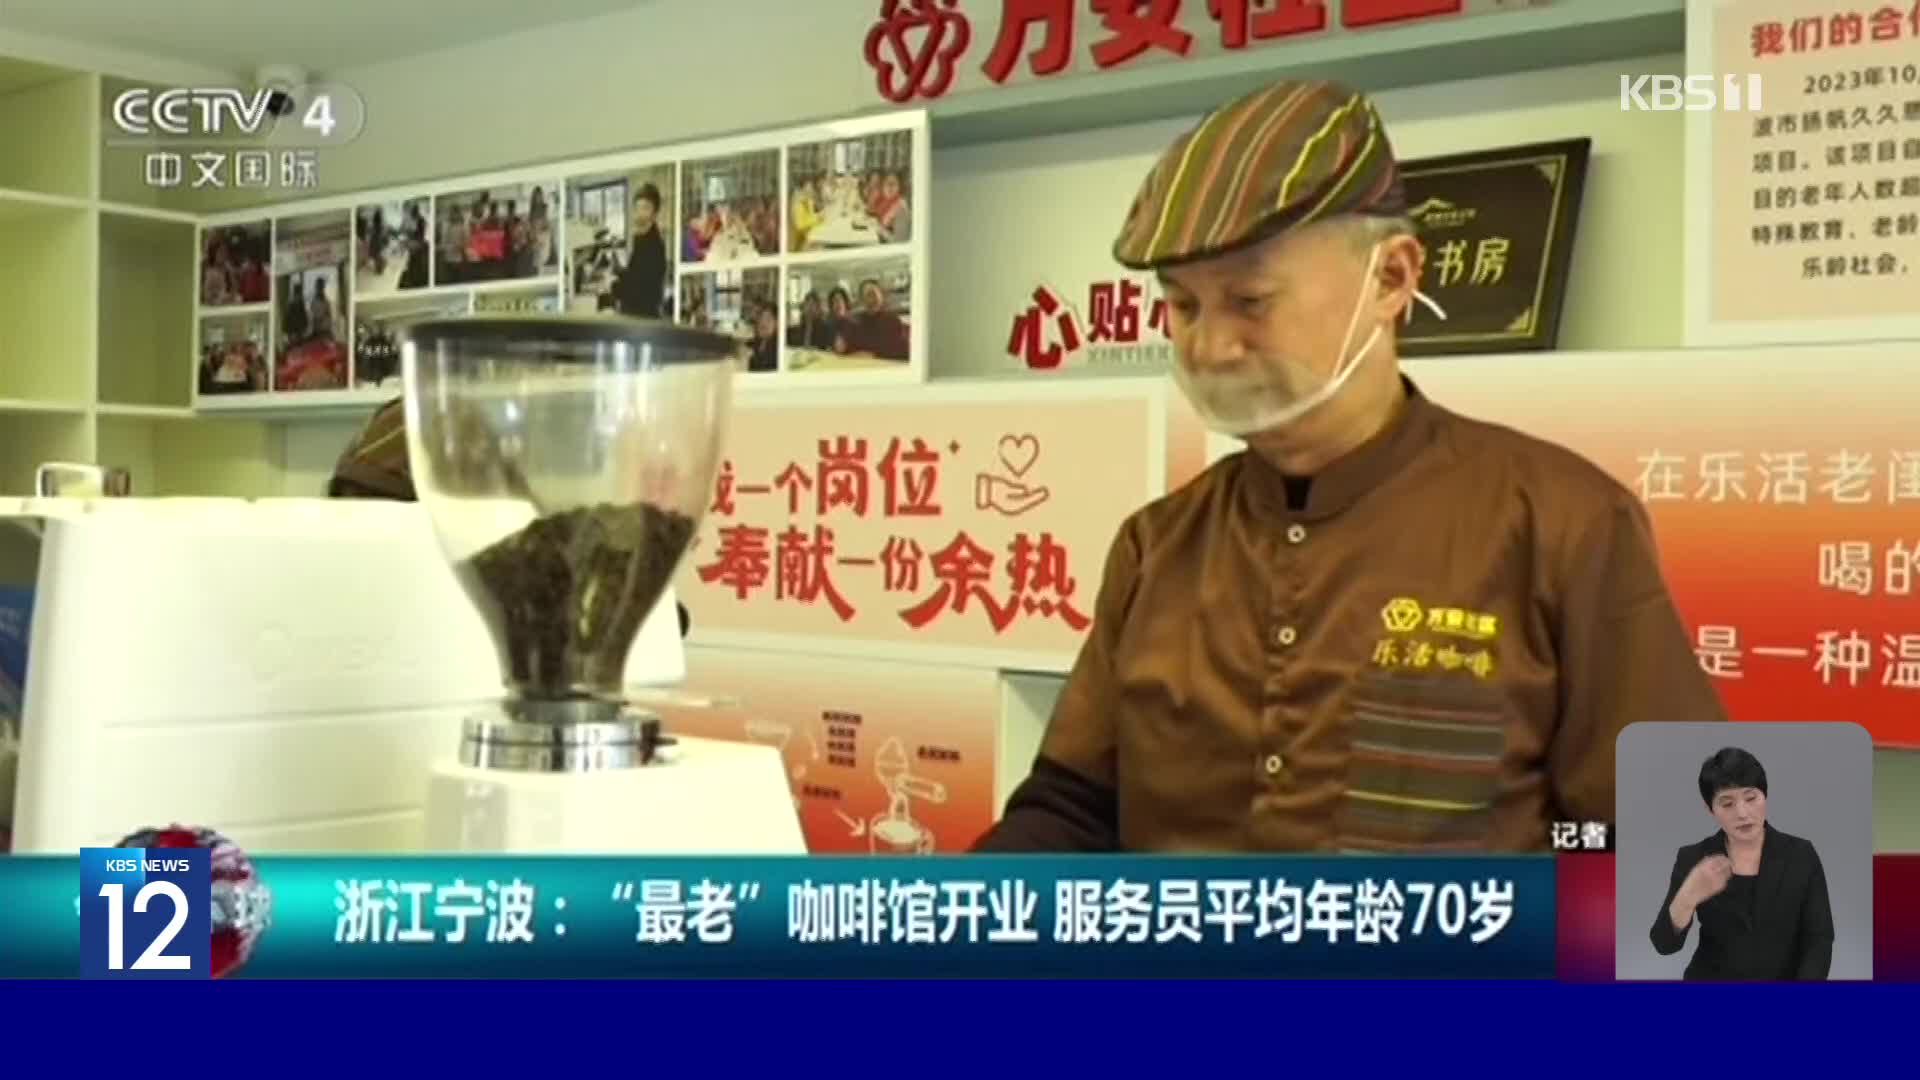 중국, 평균 연령 70살 고령층 운영 카페